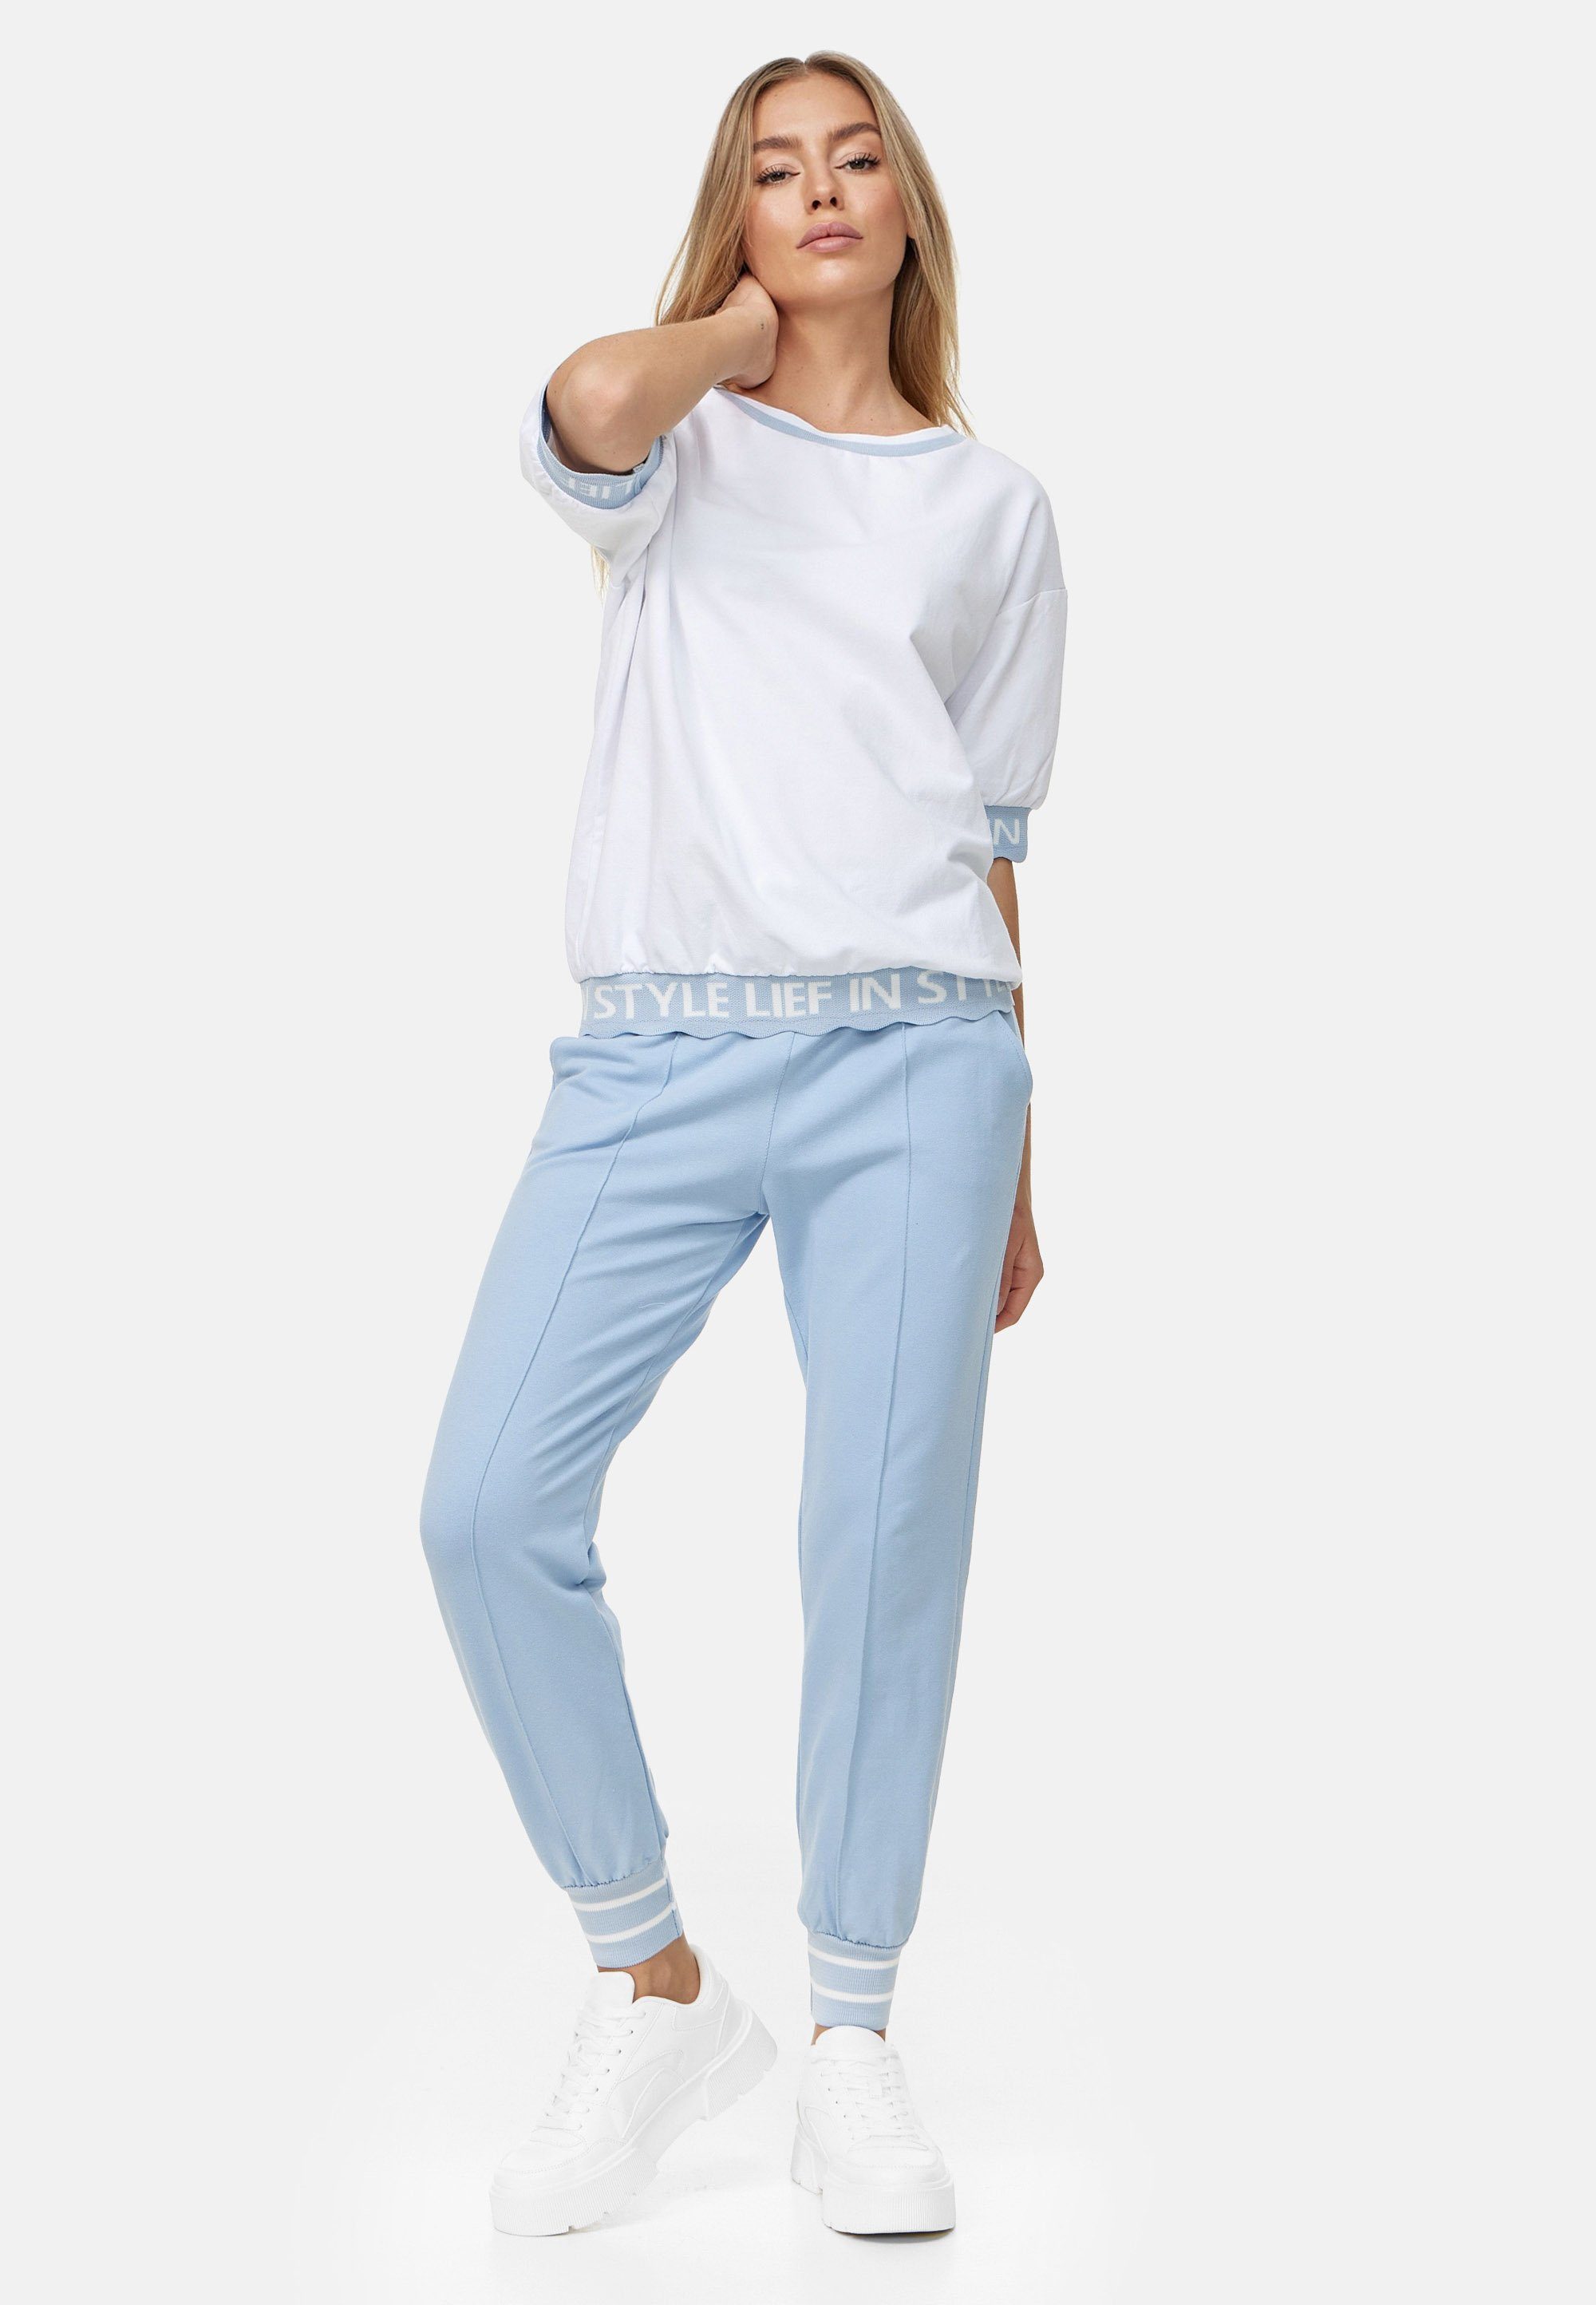 T-Shirt weiß-blau Decay Schriftzug stylishem mit